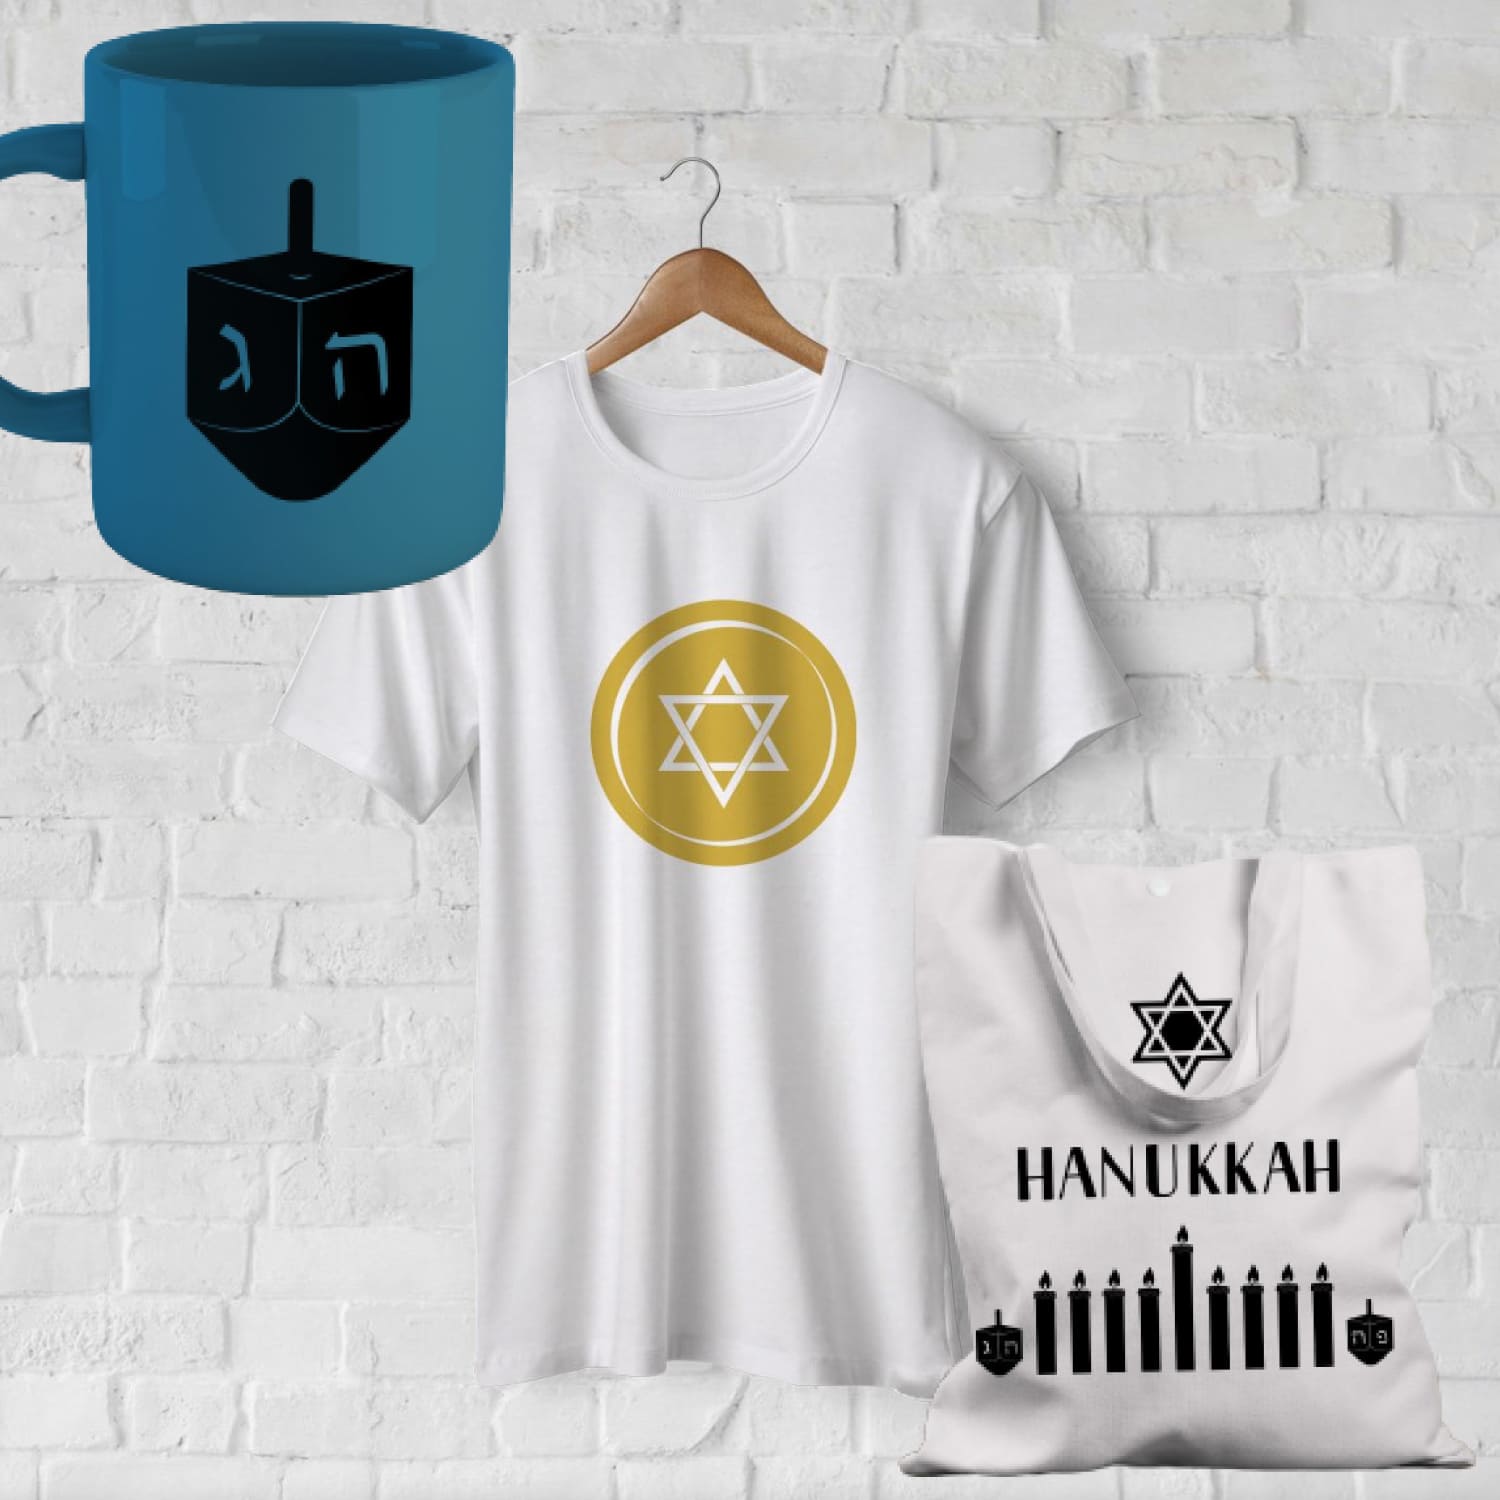 Preview hanukkah svg bundle. chanukah silhouettes.